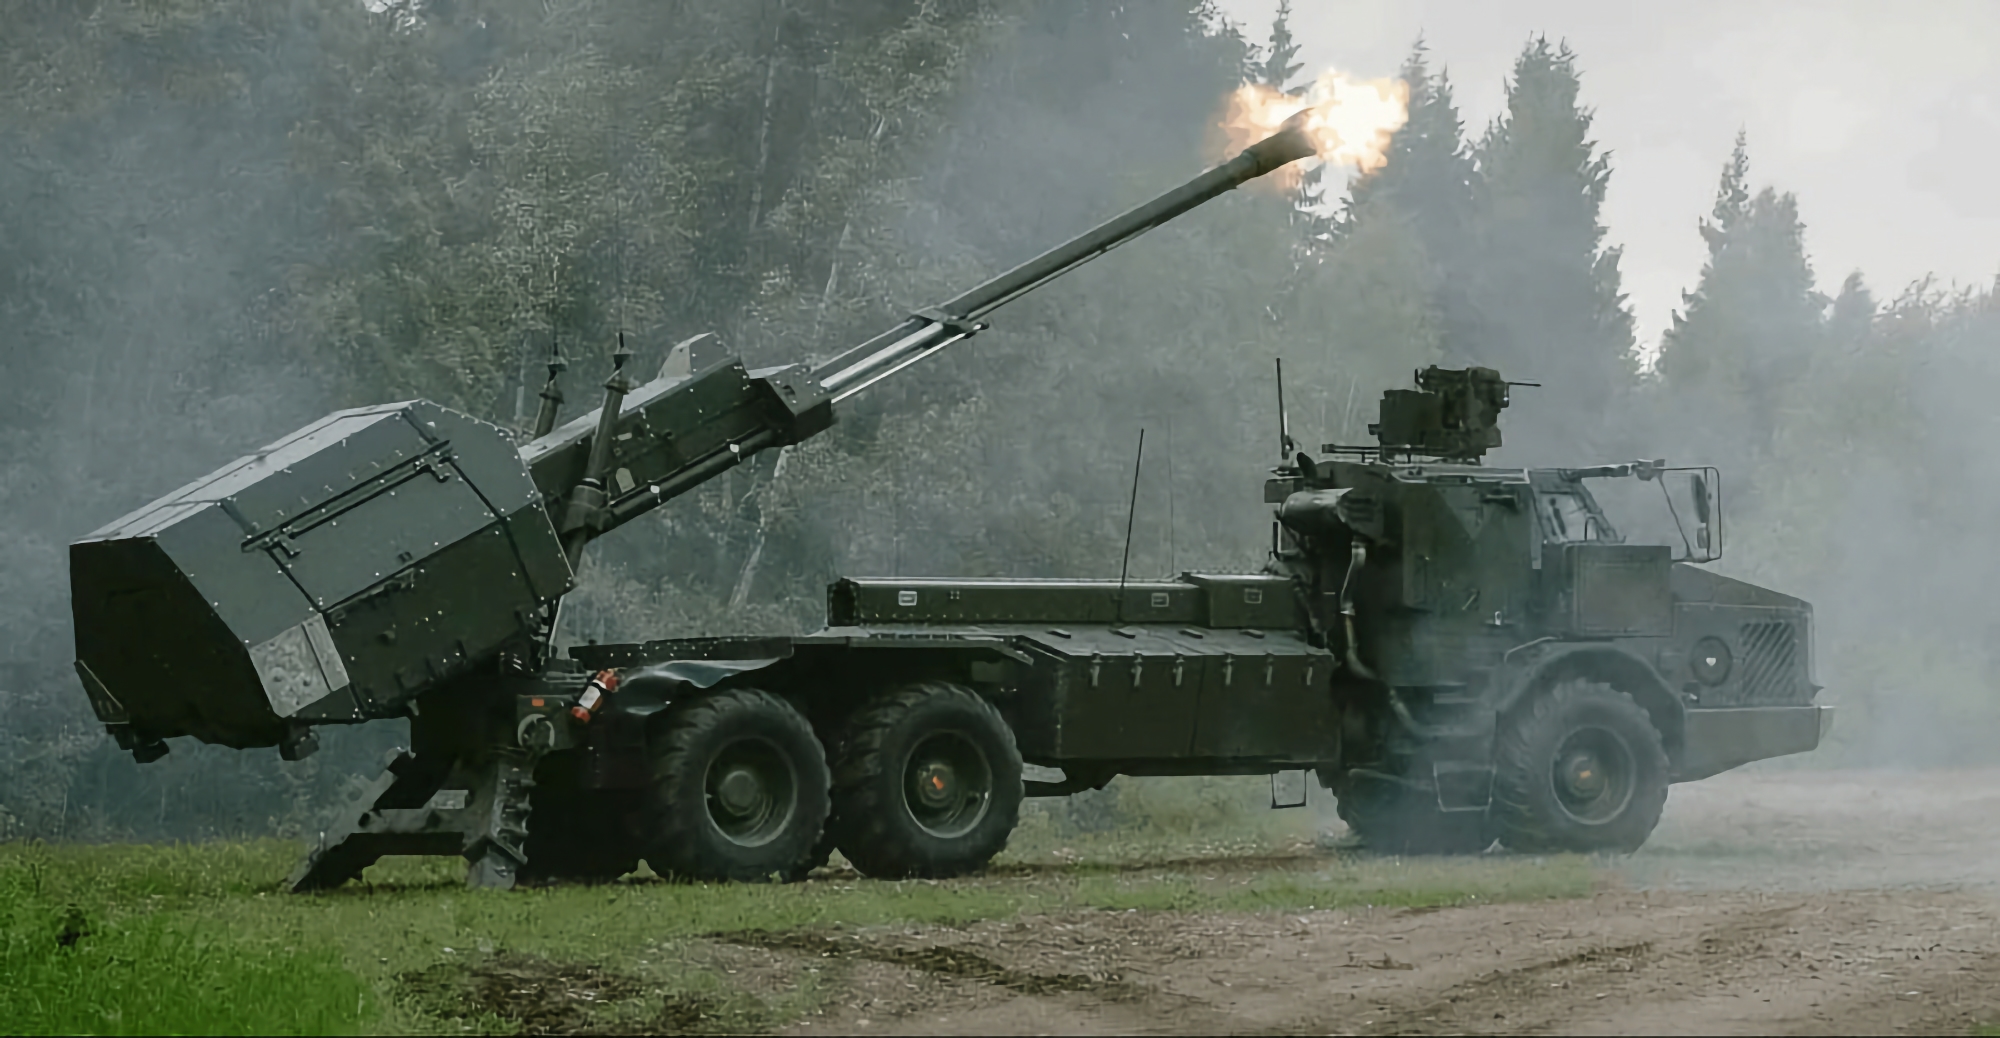 Ufficiale: La Svezia trasferisce il primo lotto di sistemi di artiglieria semovente Archer all'Ucraina